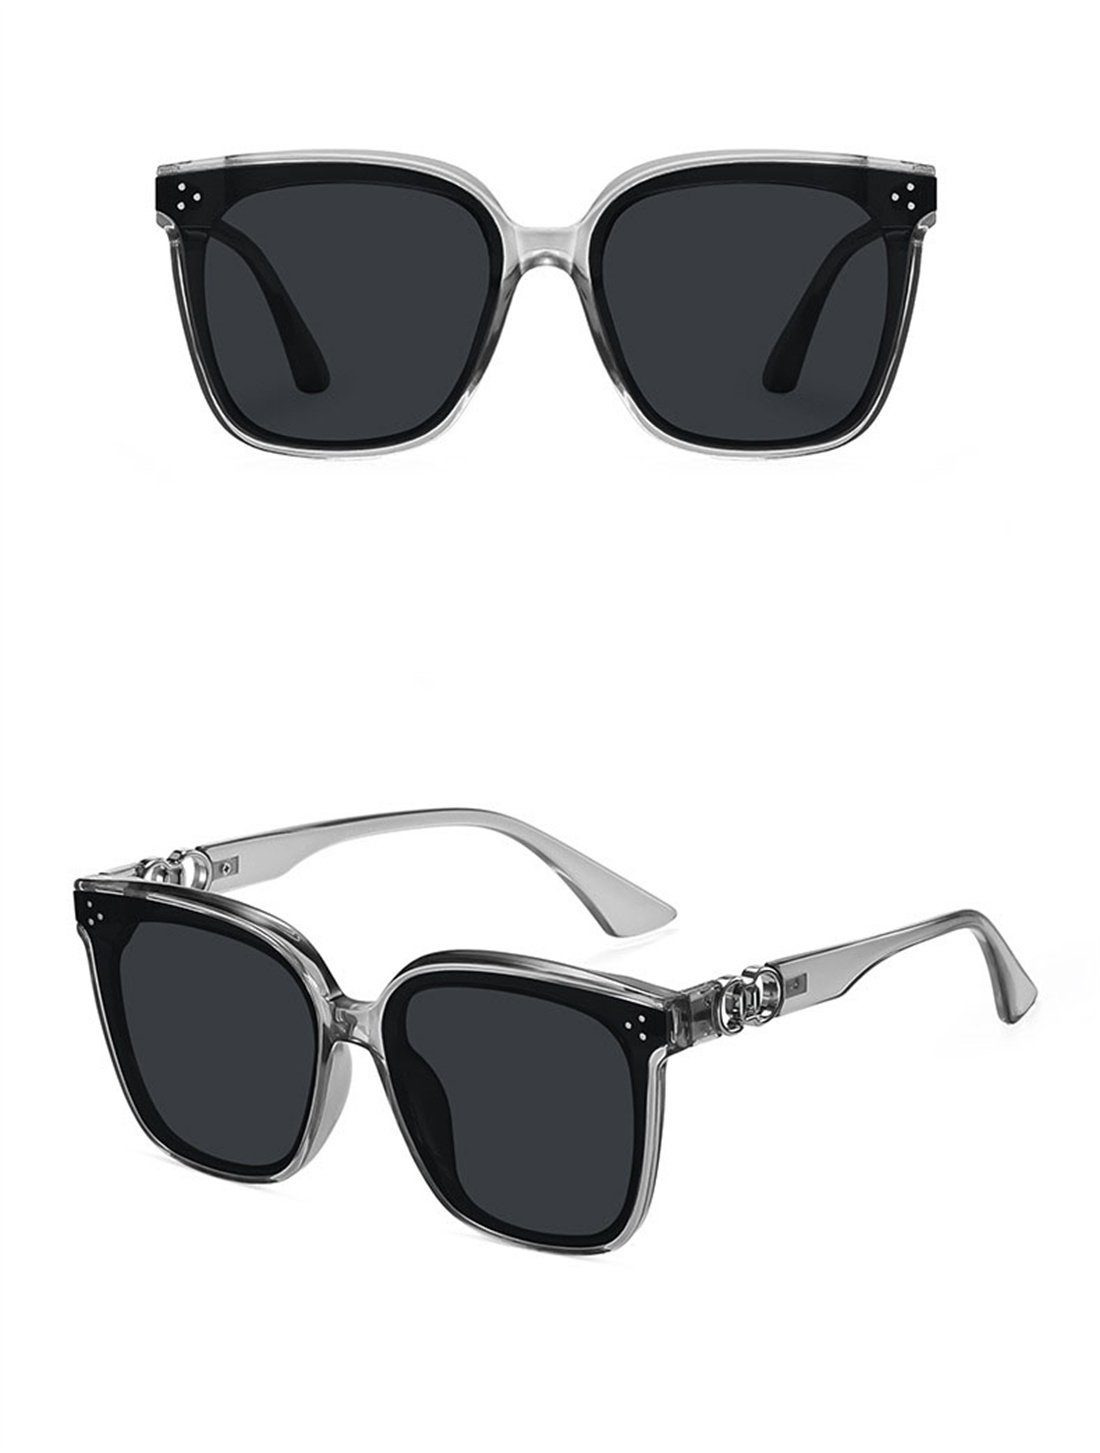 DÖRÖY Sonnenbrille Outdoor-Sonnenbrillen für Mode-Sonnenbrillen Frauen, Männer und